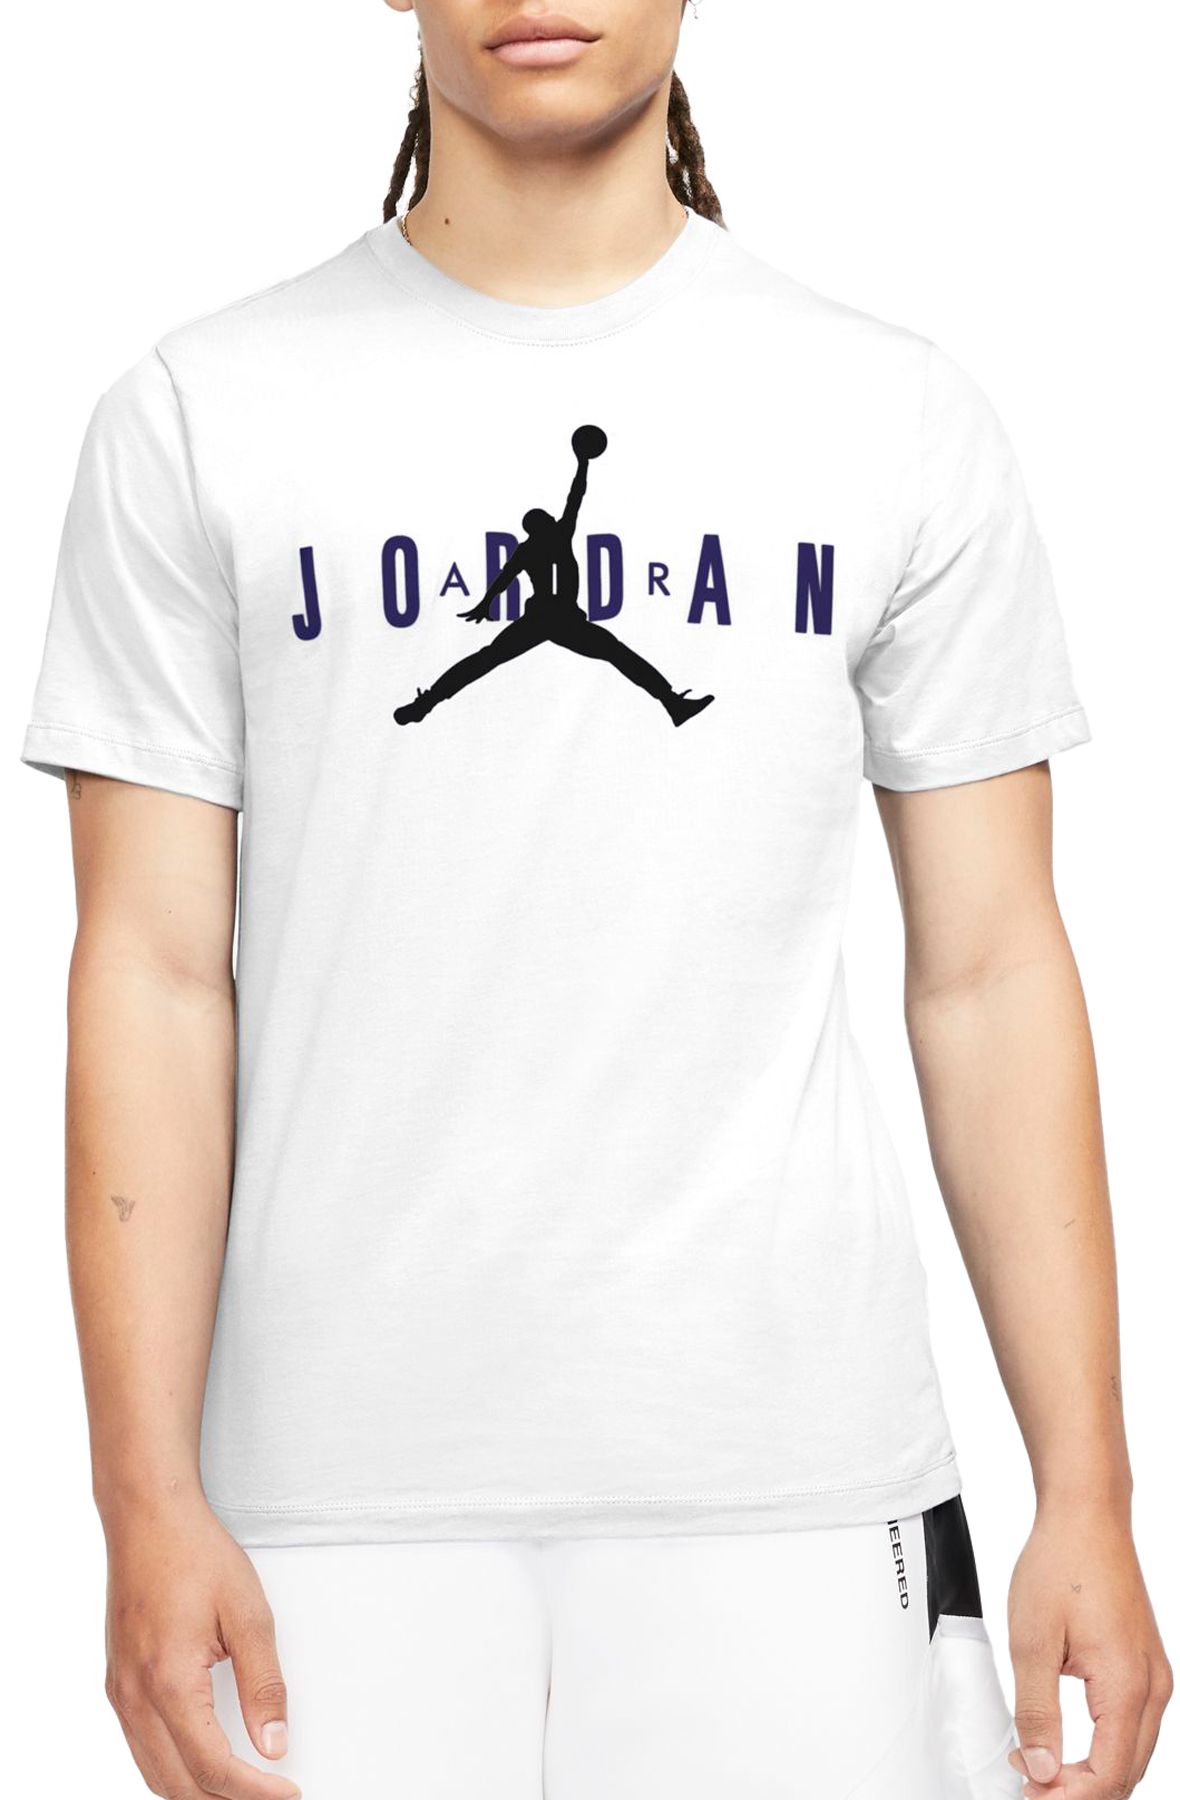 grey and white jordan shirt